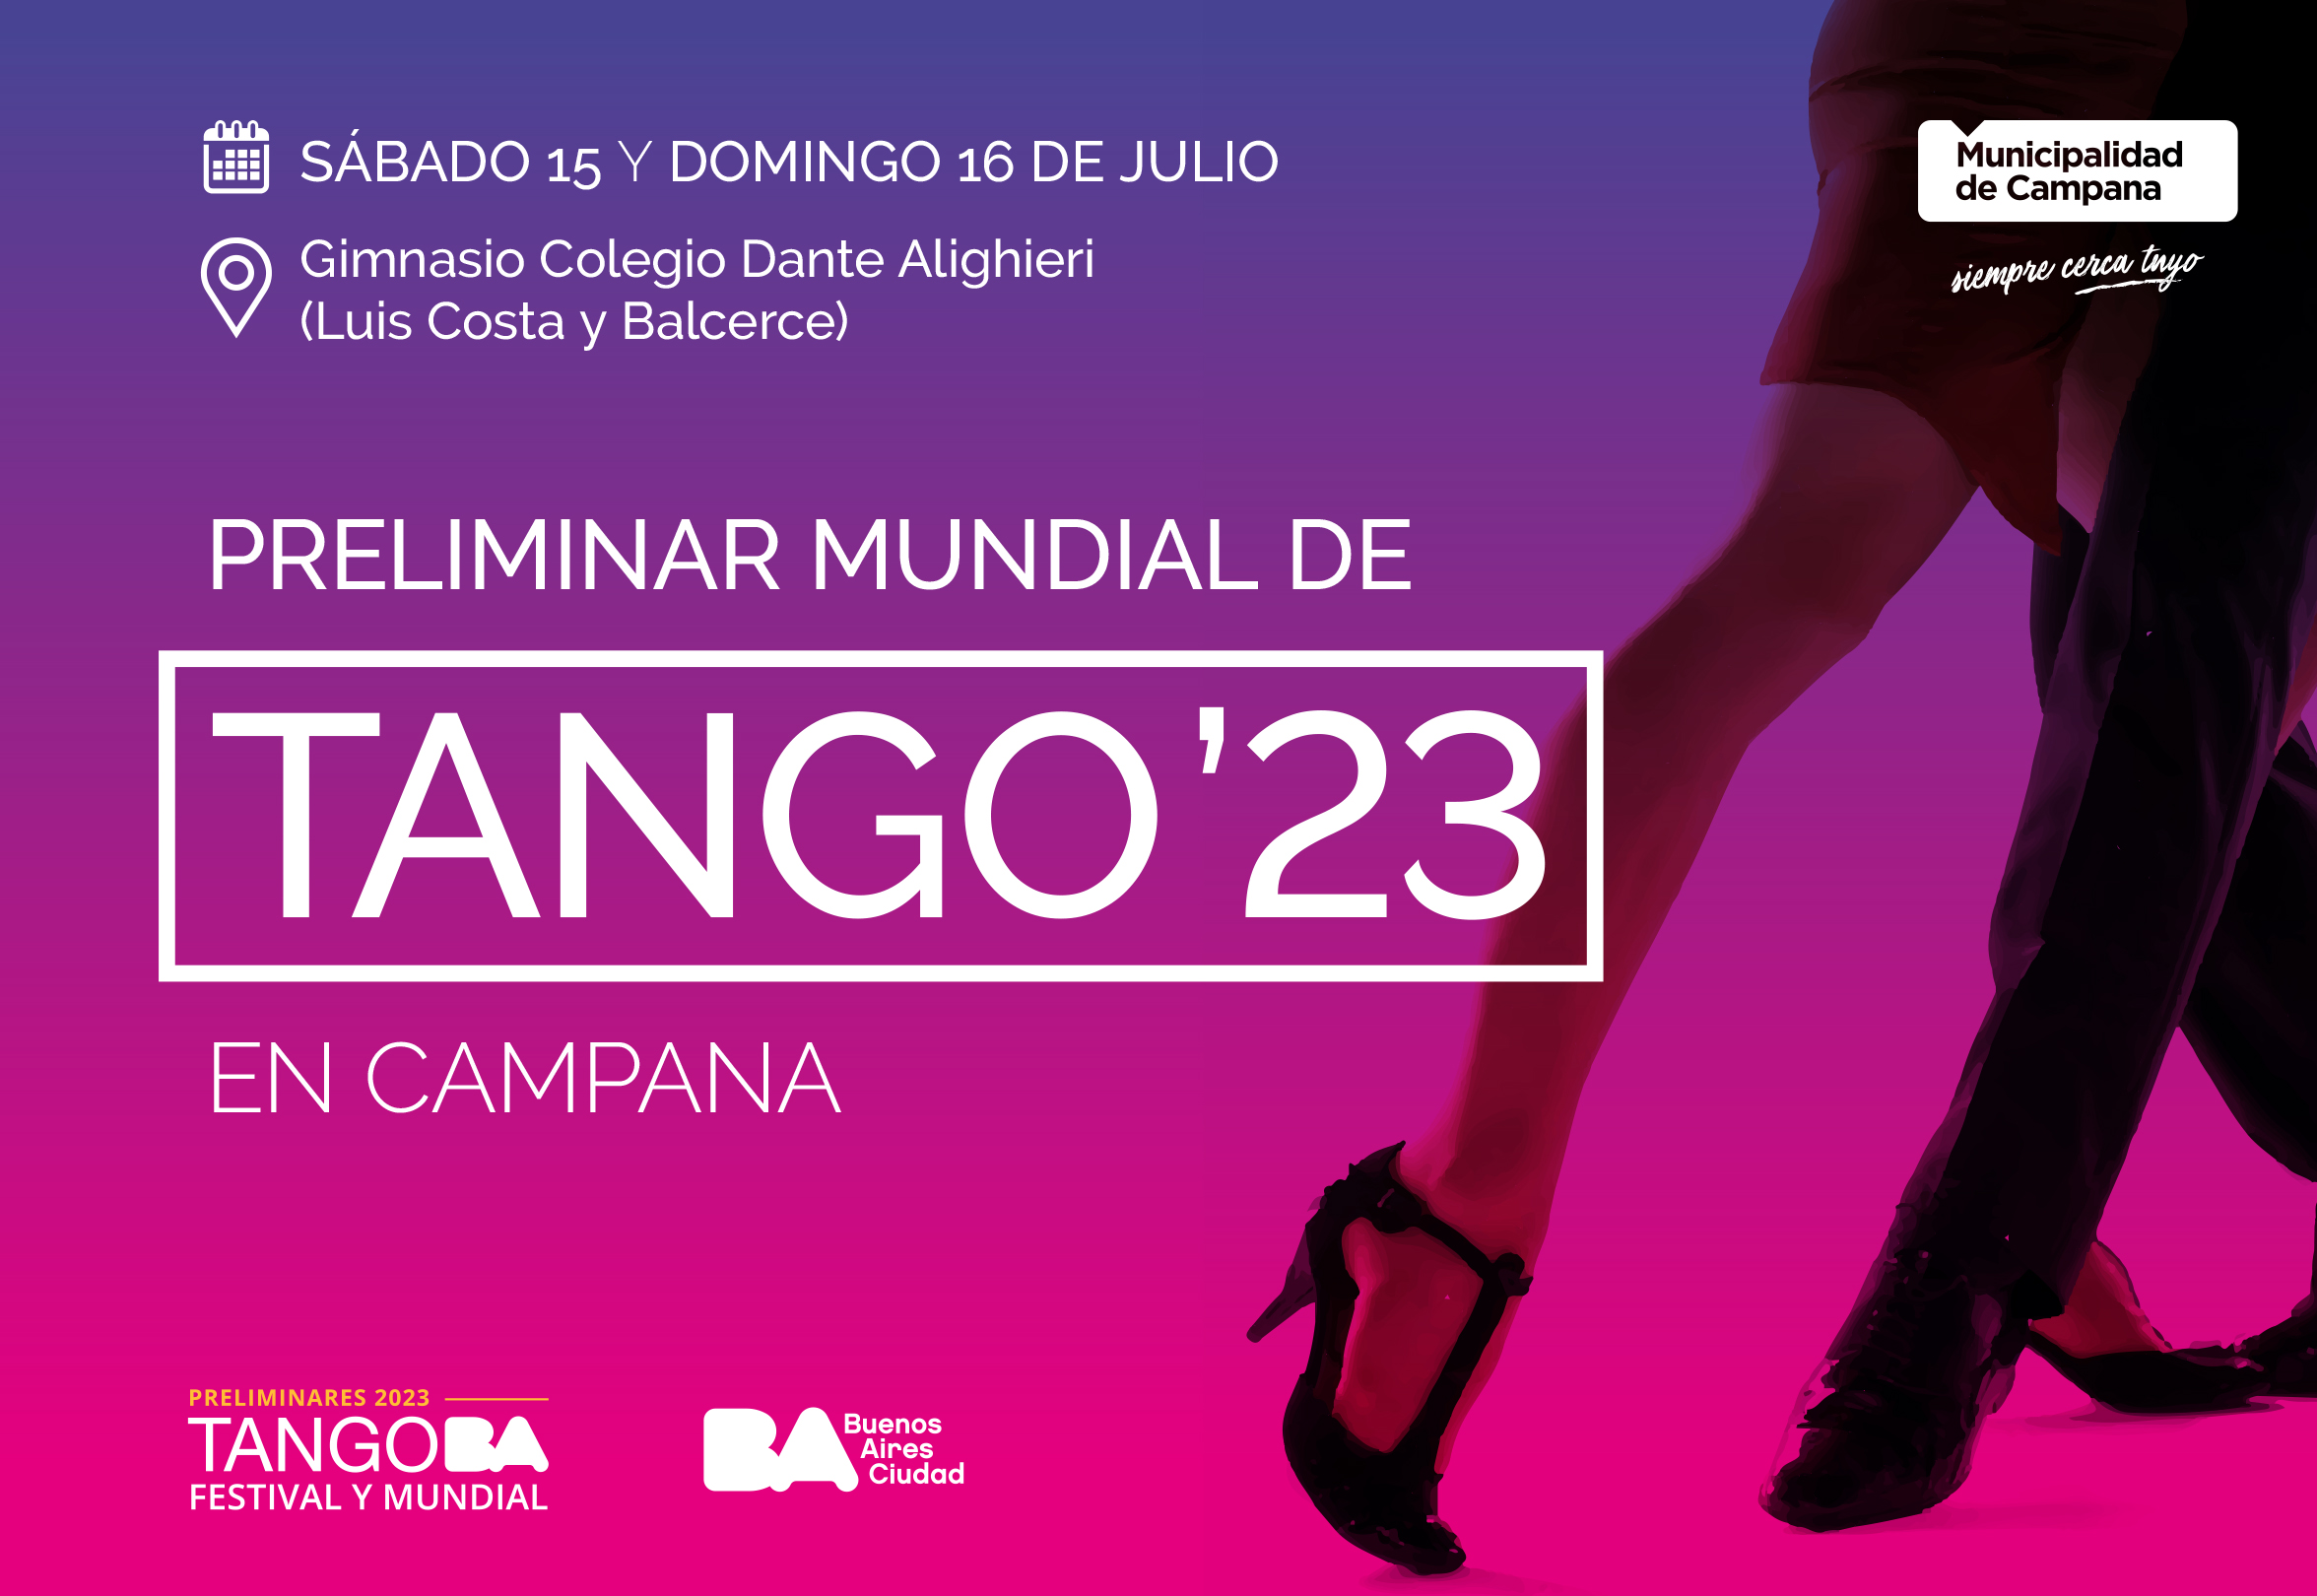 Preliminares 2023 Tango BA Festival y Mundial